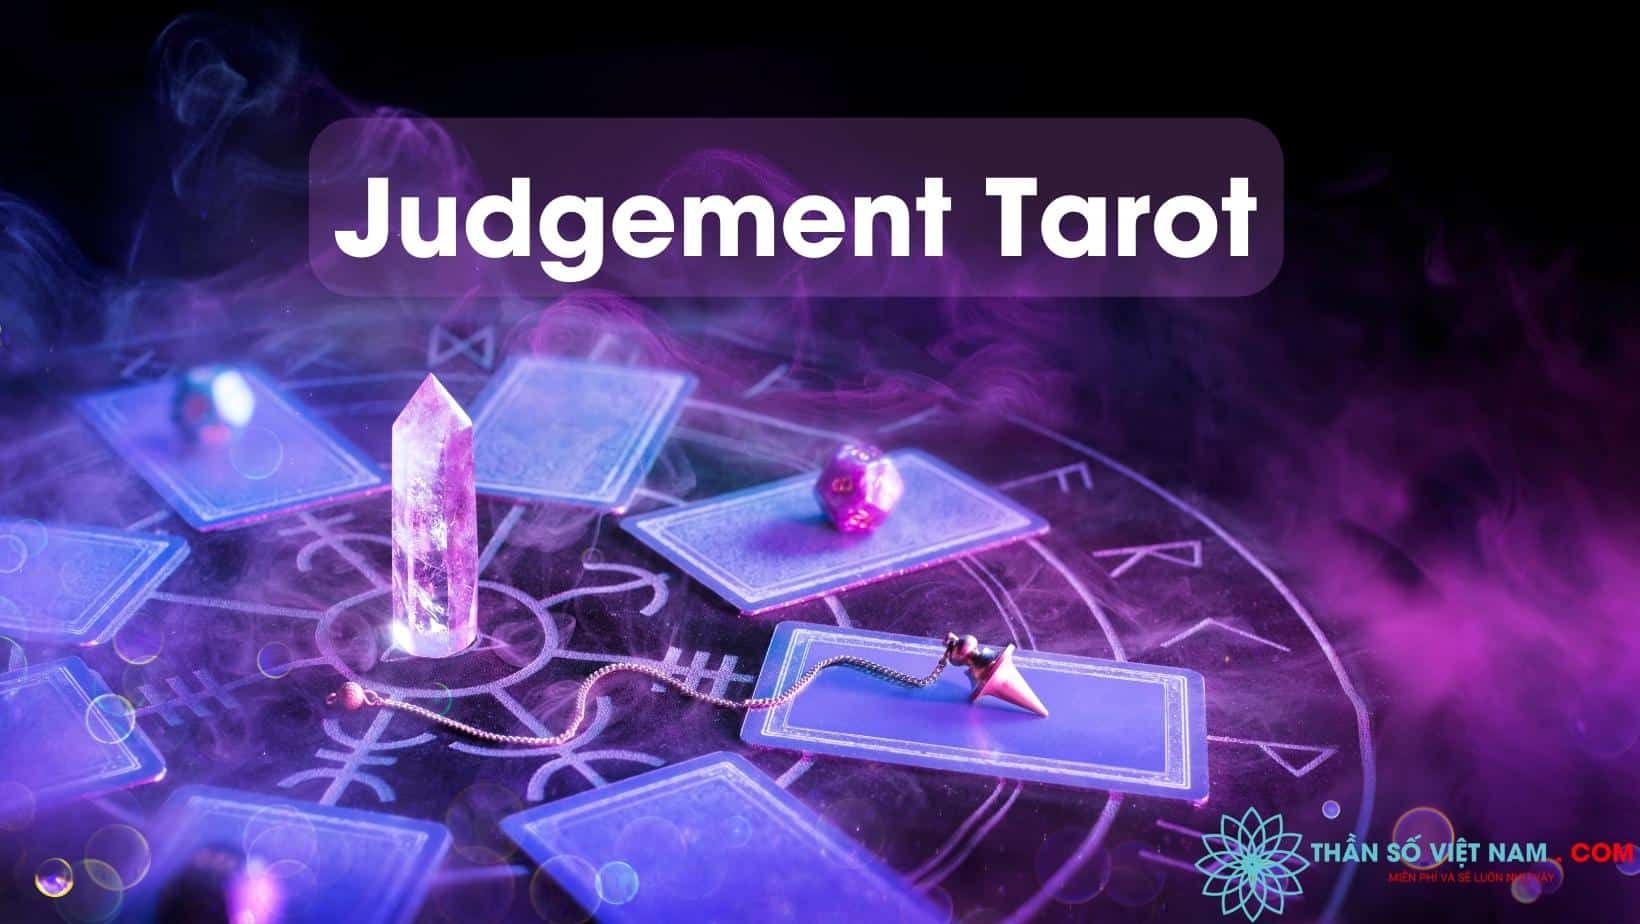 Lá bài Tarot là một phương tiện cổ xưa để suy ngẫm và tìm kiếm câu trả lời cho cuộc sống của chúng ta. Xem hình ảnh liên quan để khám phá thế giới đầy bí ẩn của Tarot và tìm hiểu về các lá bài và ý nghĩa của chúng.